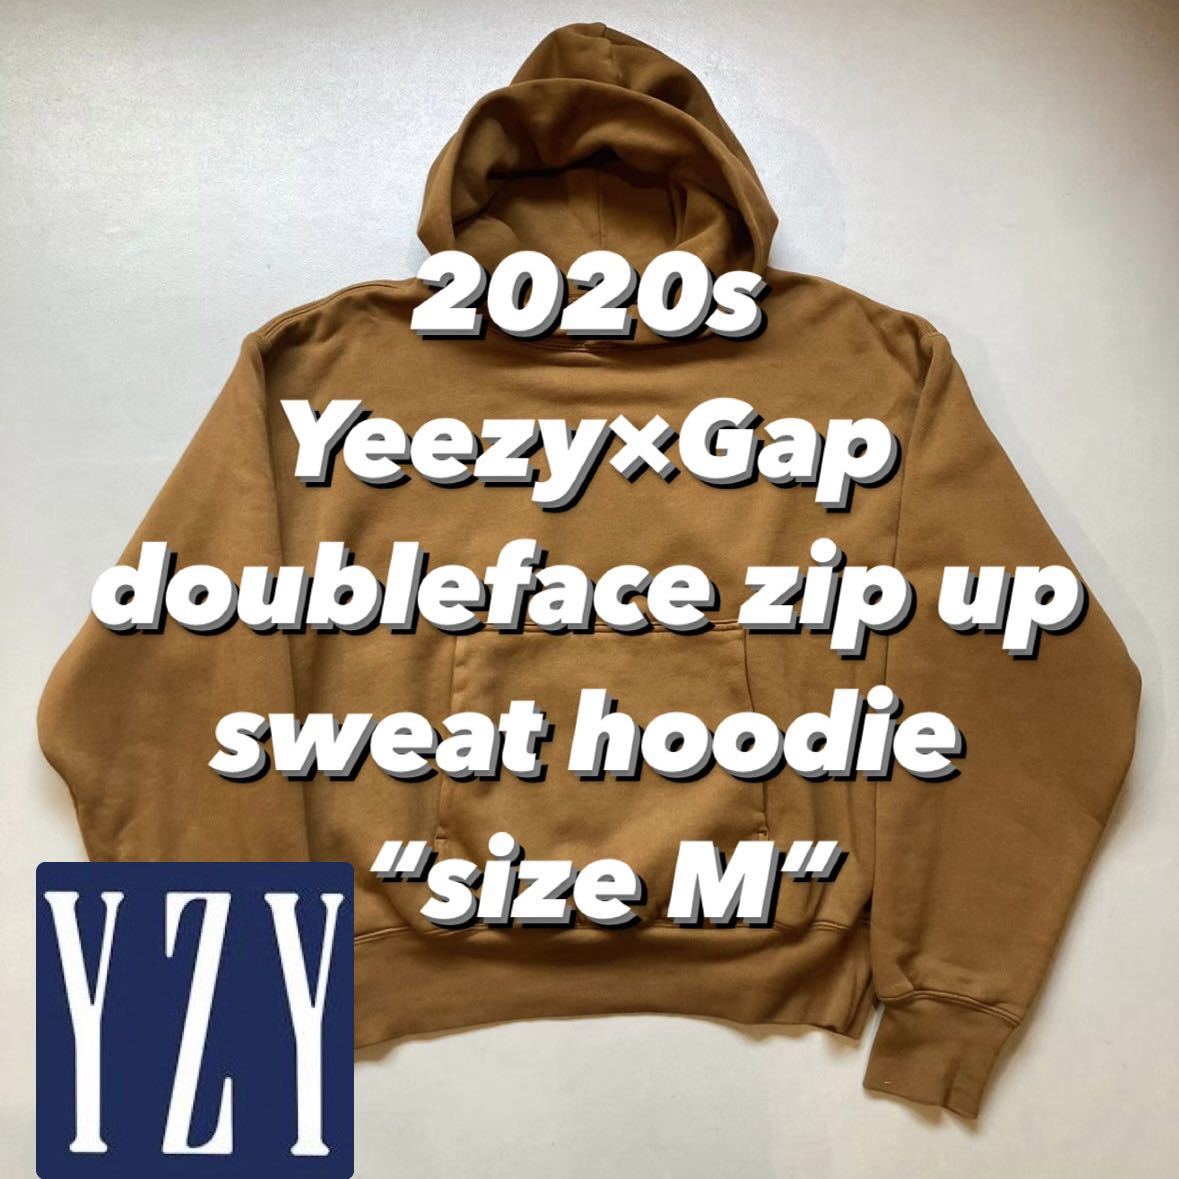 2020s Yeezy×Gap doubleface zip up sweat hoodie “size M” 2020年